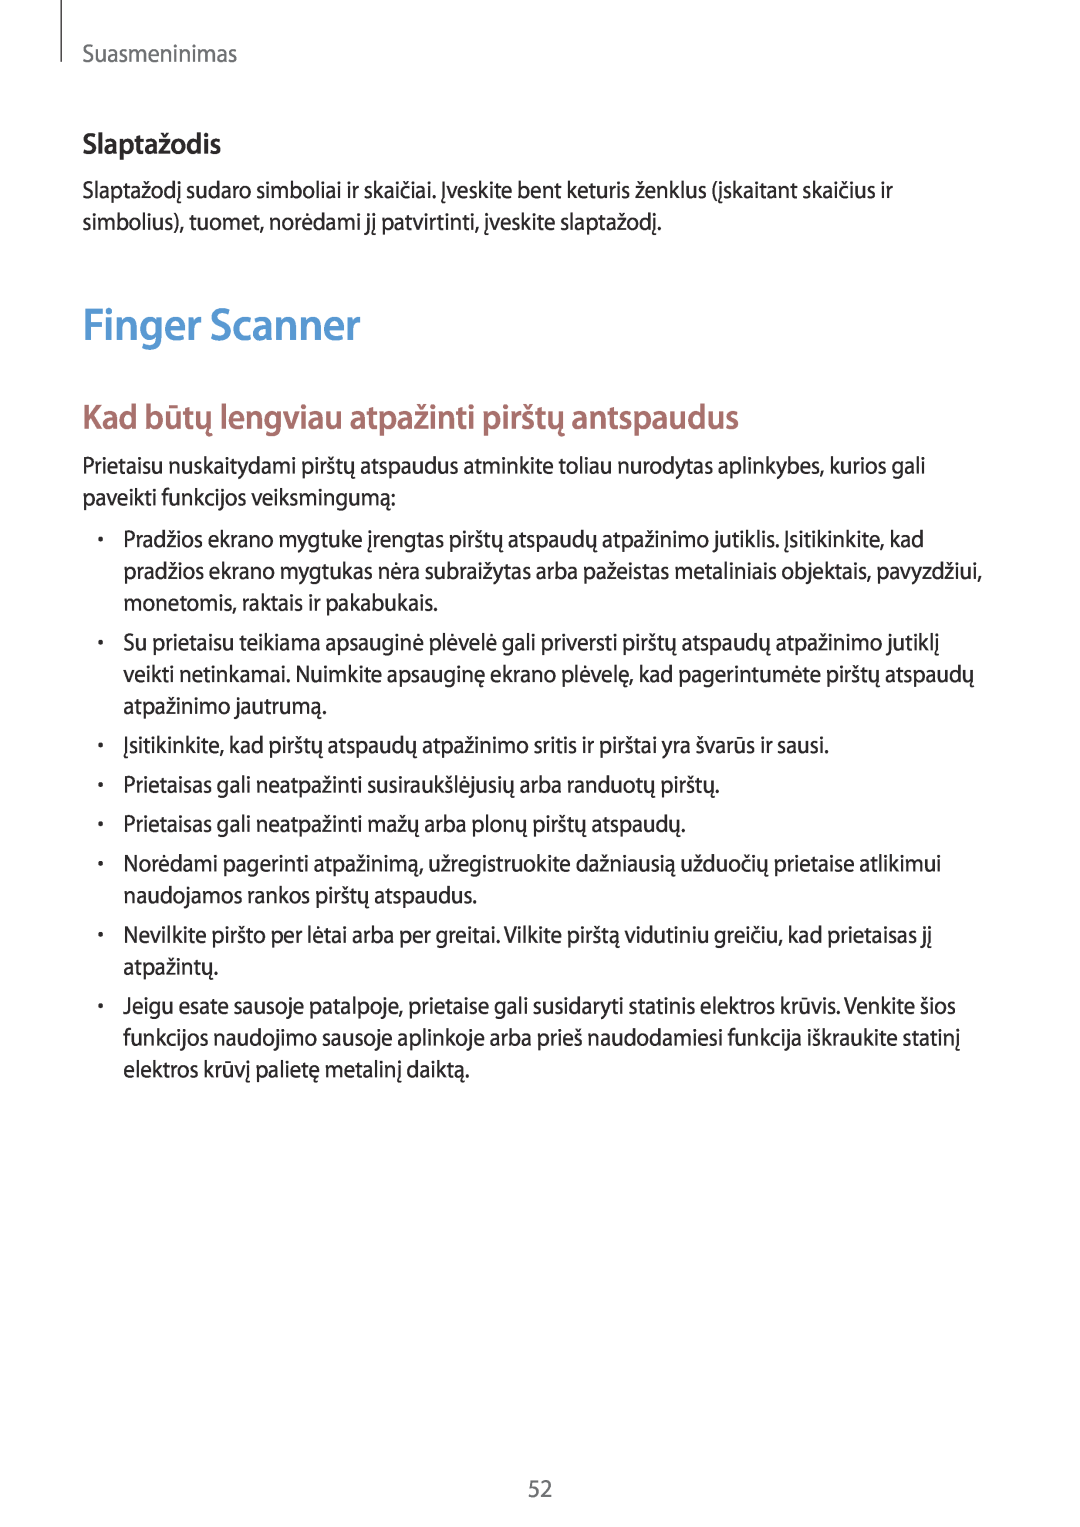 Samsung SM-T800NZWASEB manual Finger Scanner, Kad būtų lengviau atpažinti pirštų antspaudus, Slaptažodis, Suasmeninimas 